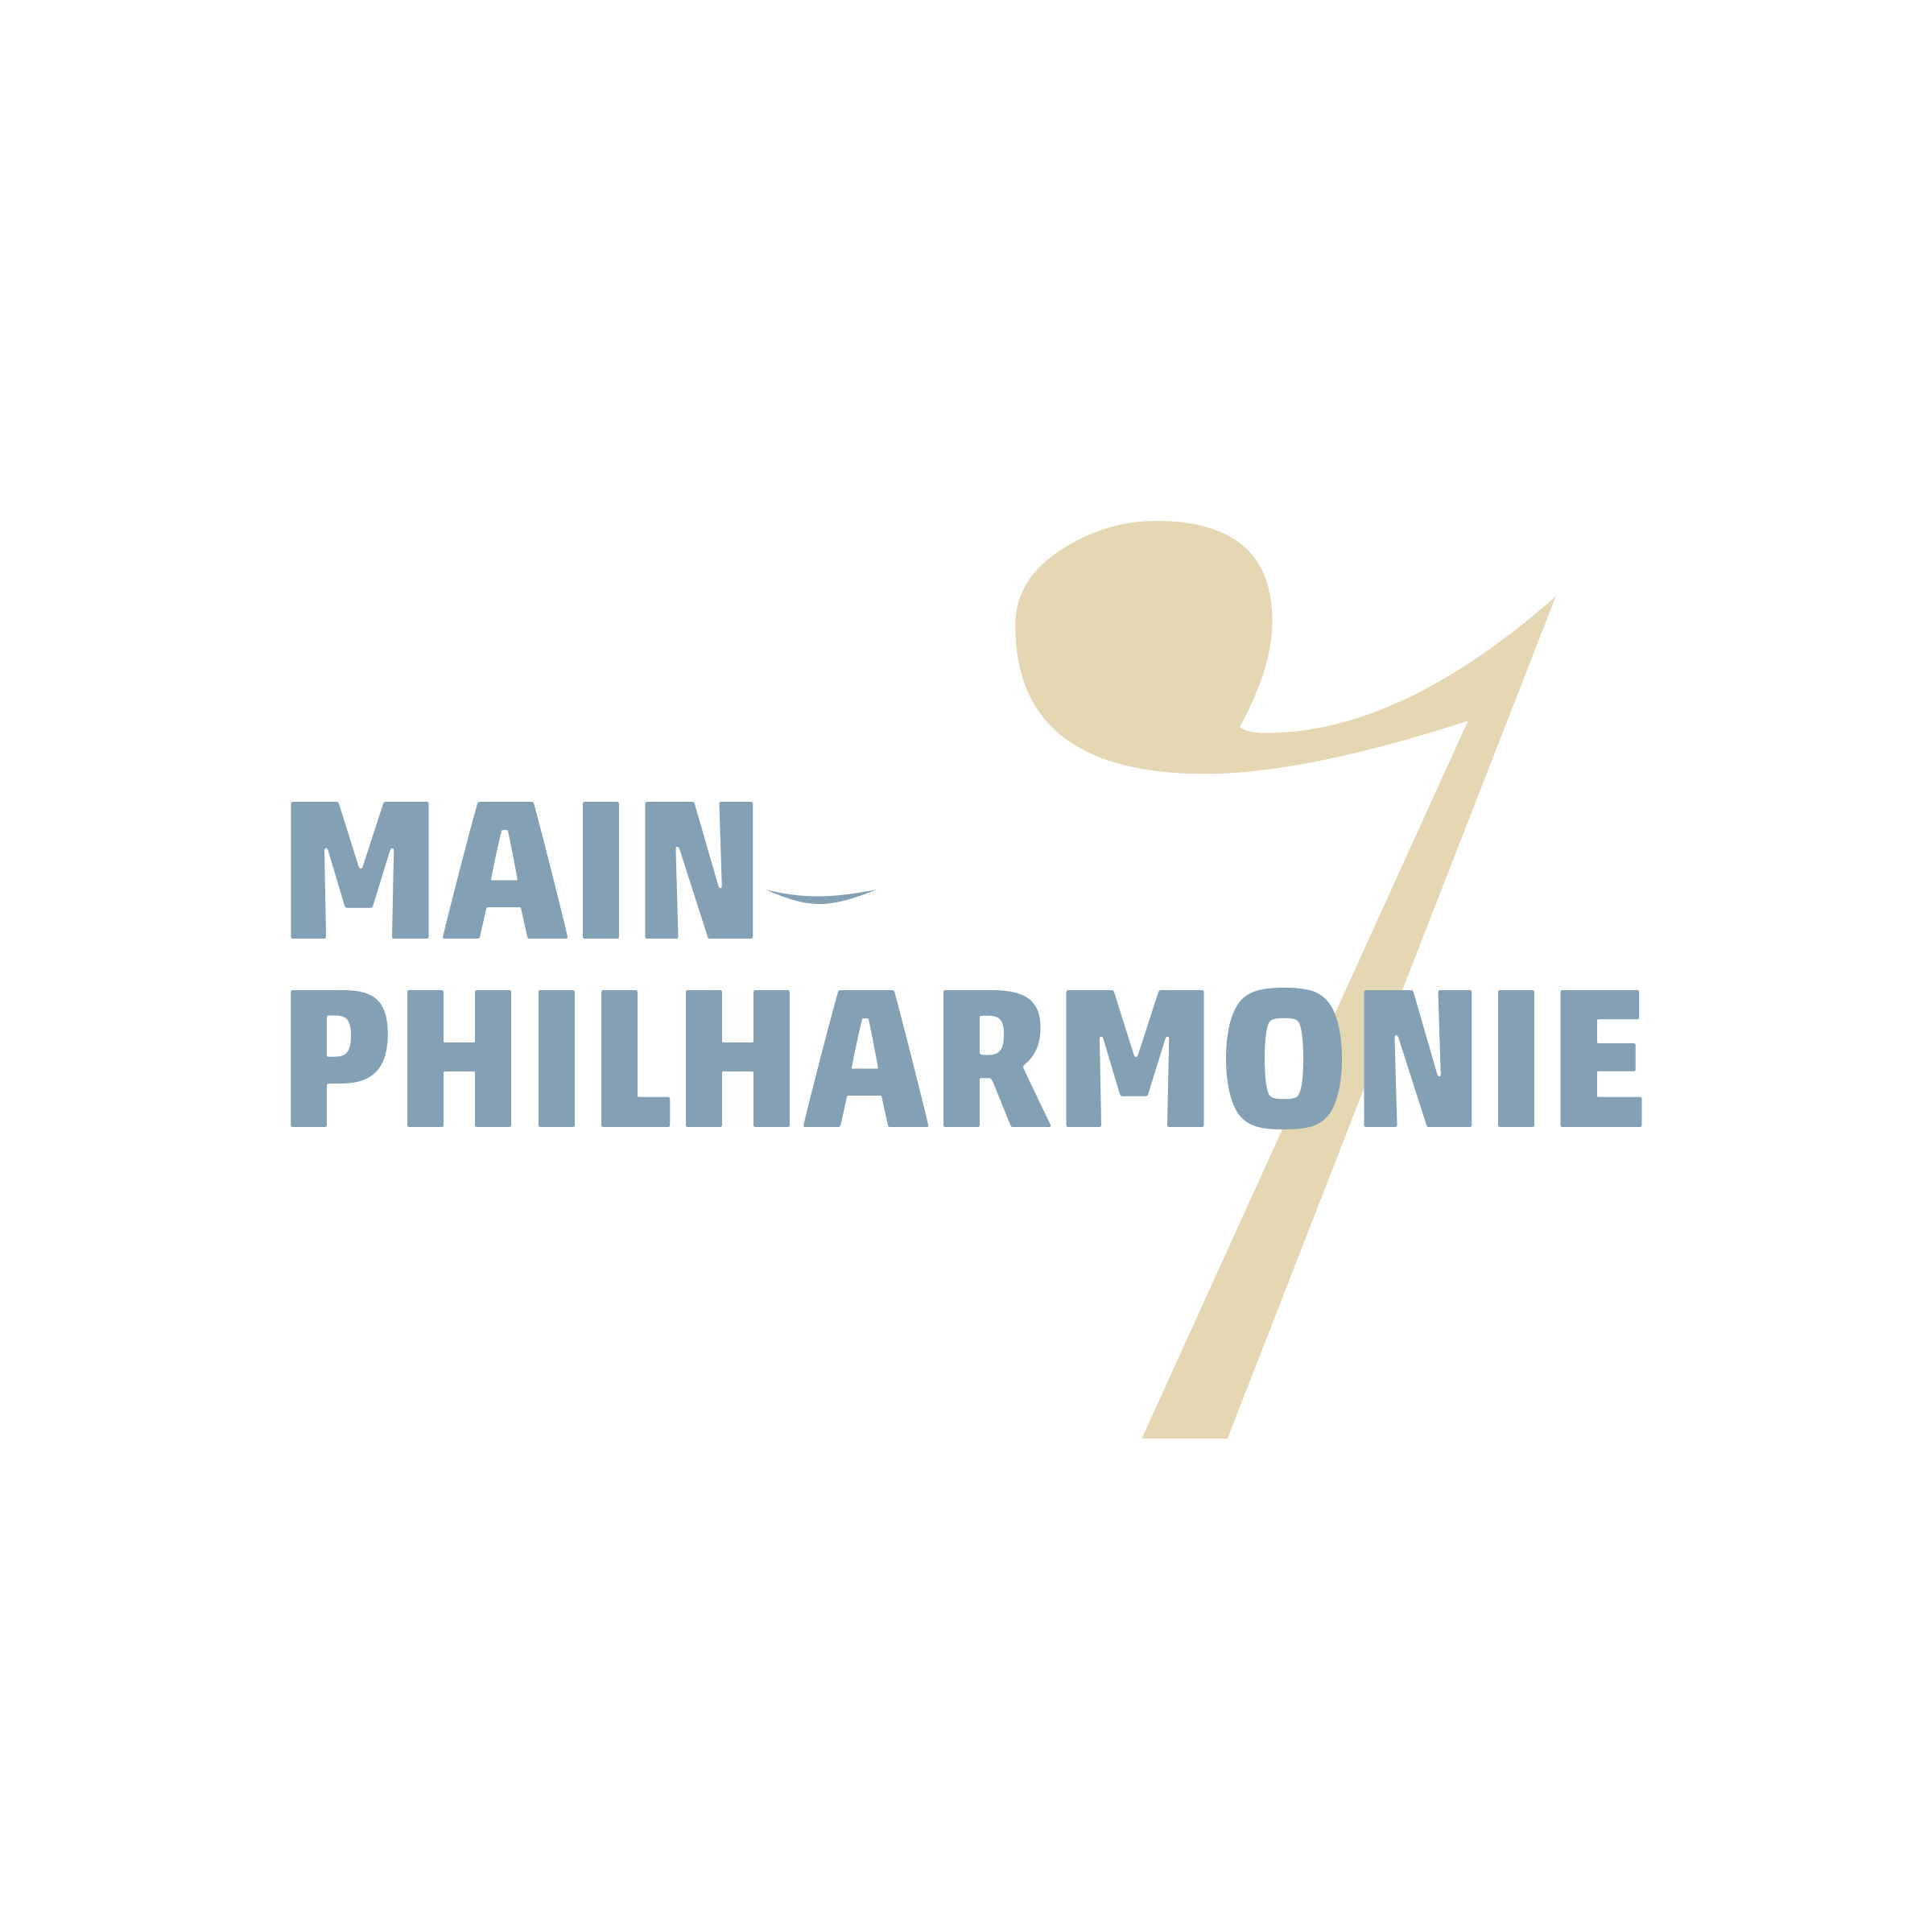 Main-Philharmonie